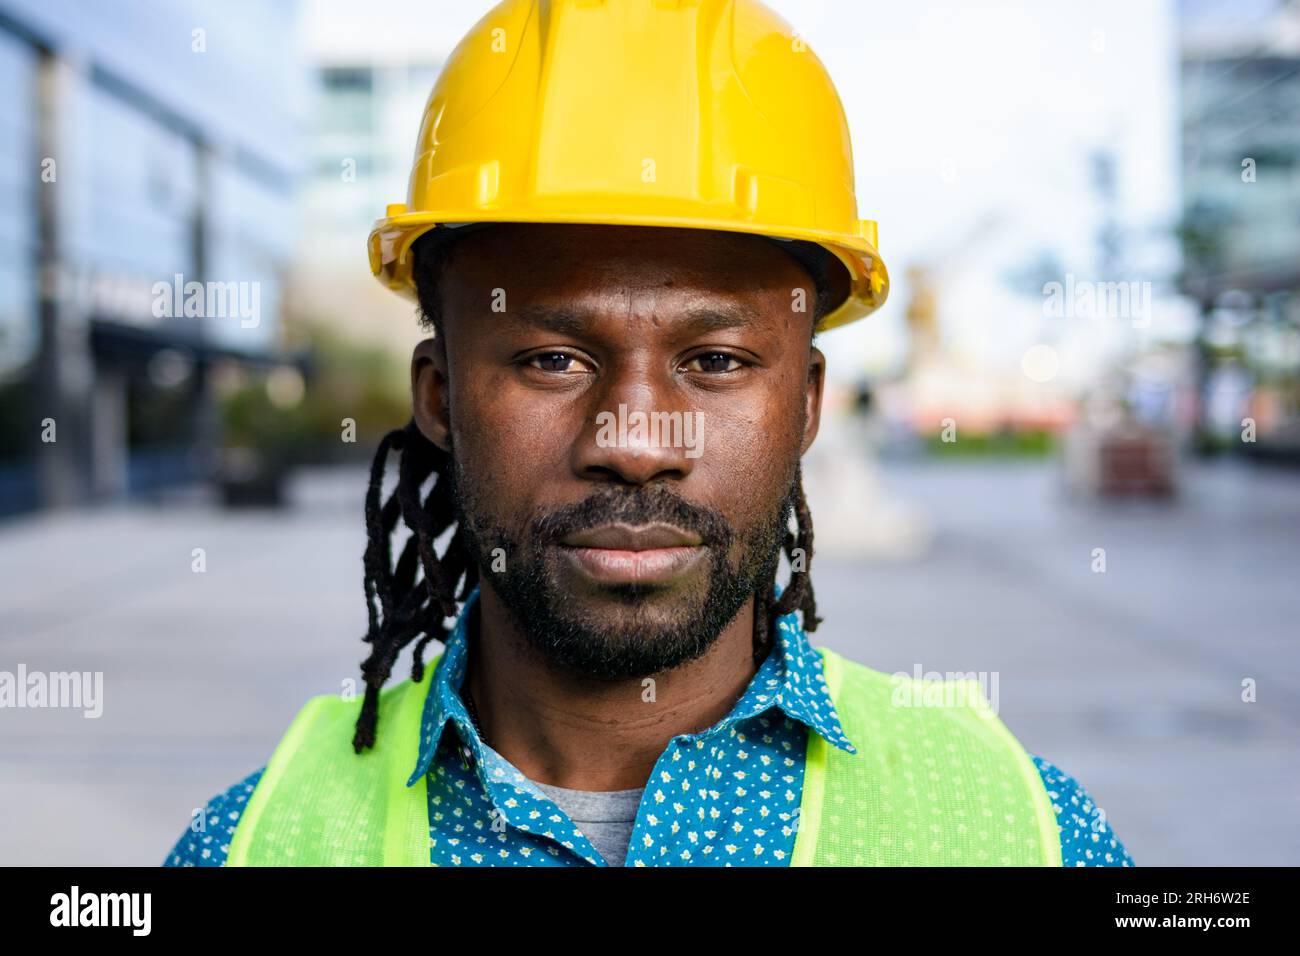 retrato de hombre de etnia africana con barba y rastas, trabajador de la construcción con casco y chaleco reflectante, de pie al aire libre, mirando cam Foto de stock